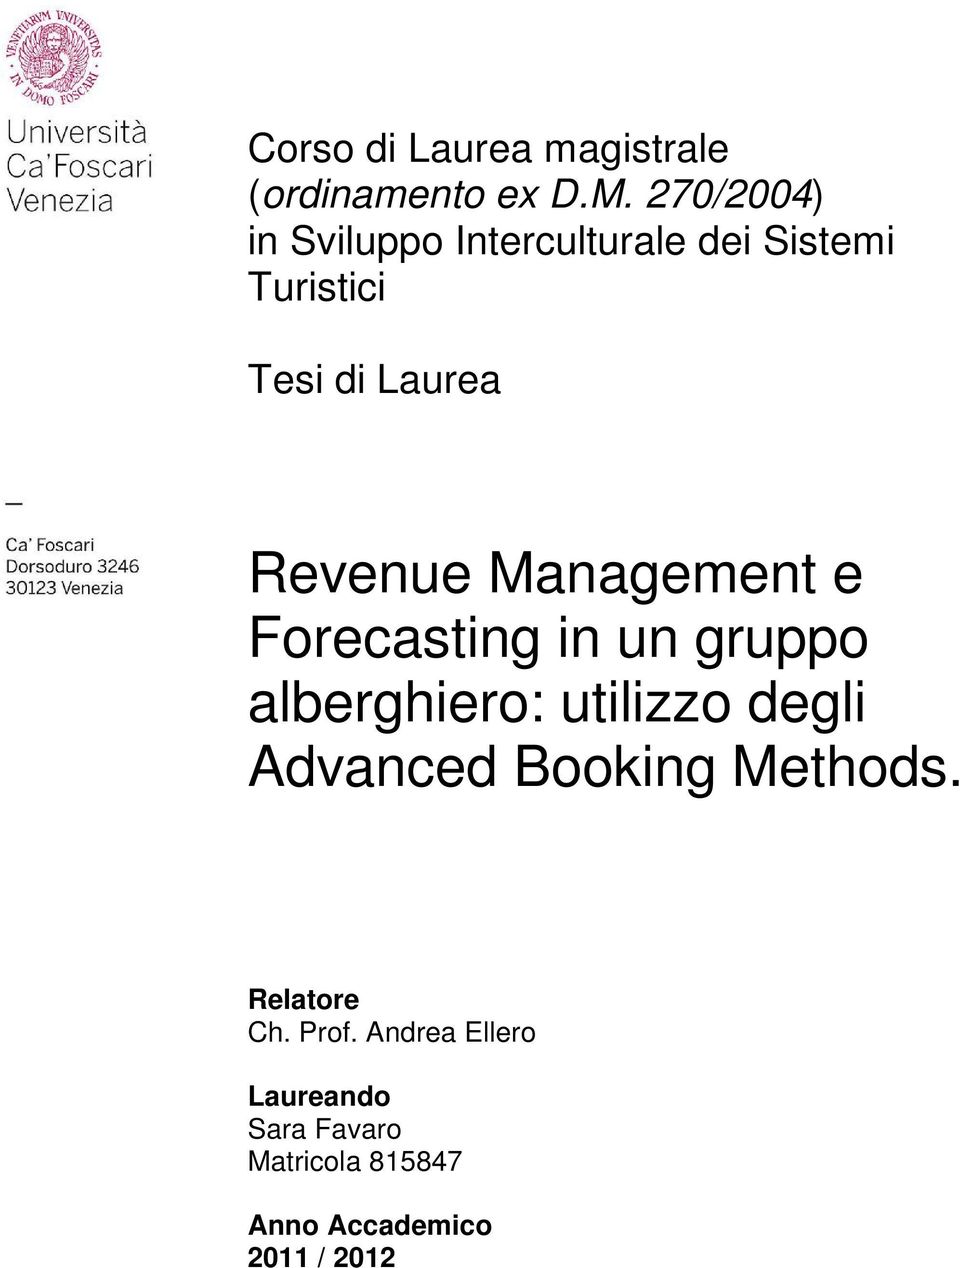 Revenue Management e Forecasting in un gruppo alberghiero: utilizzo degli